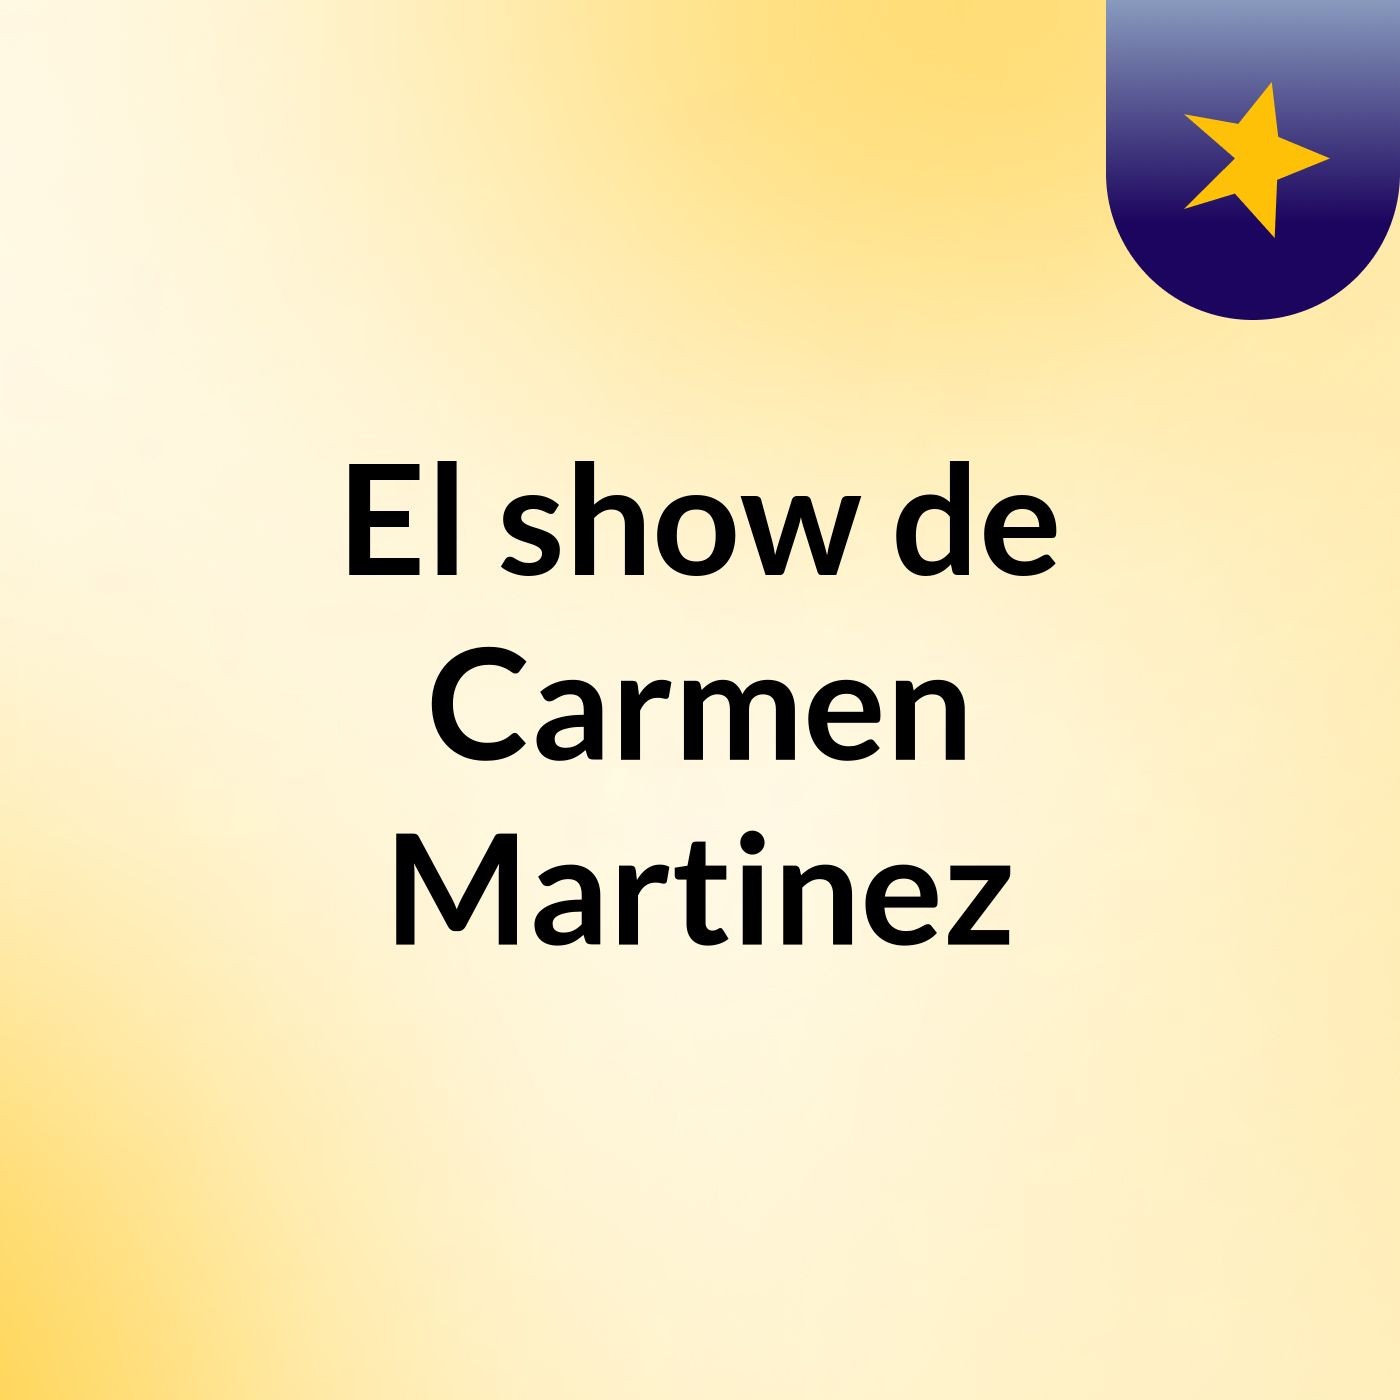 El show de Carmen Martinez